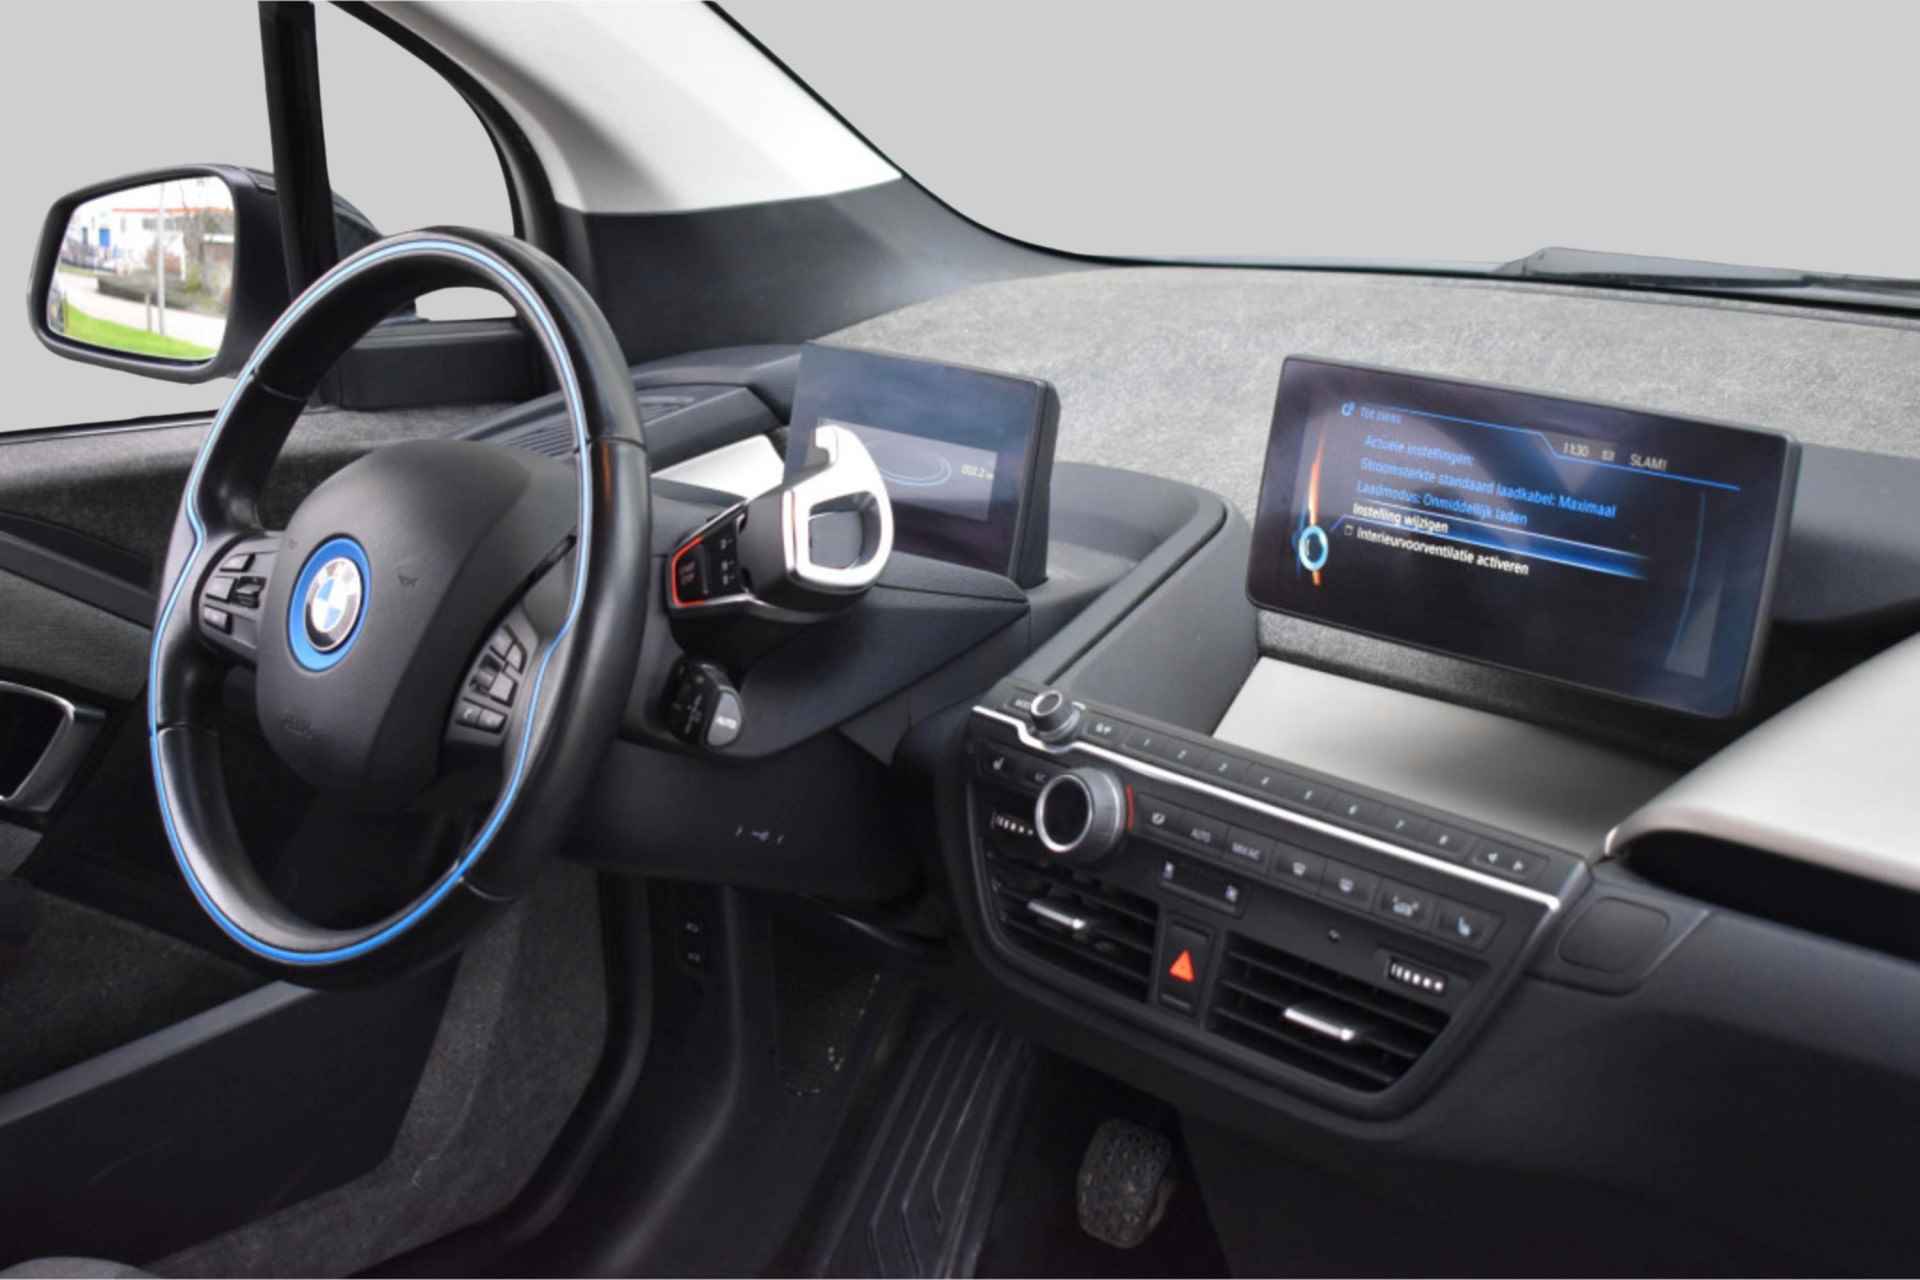 BMW i3 Basis Comfort Advance 22 kWh - 10/23